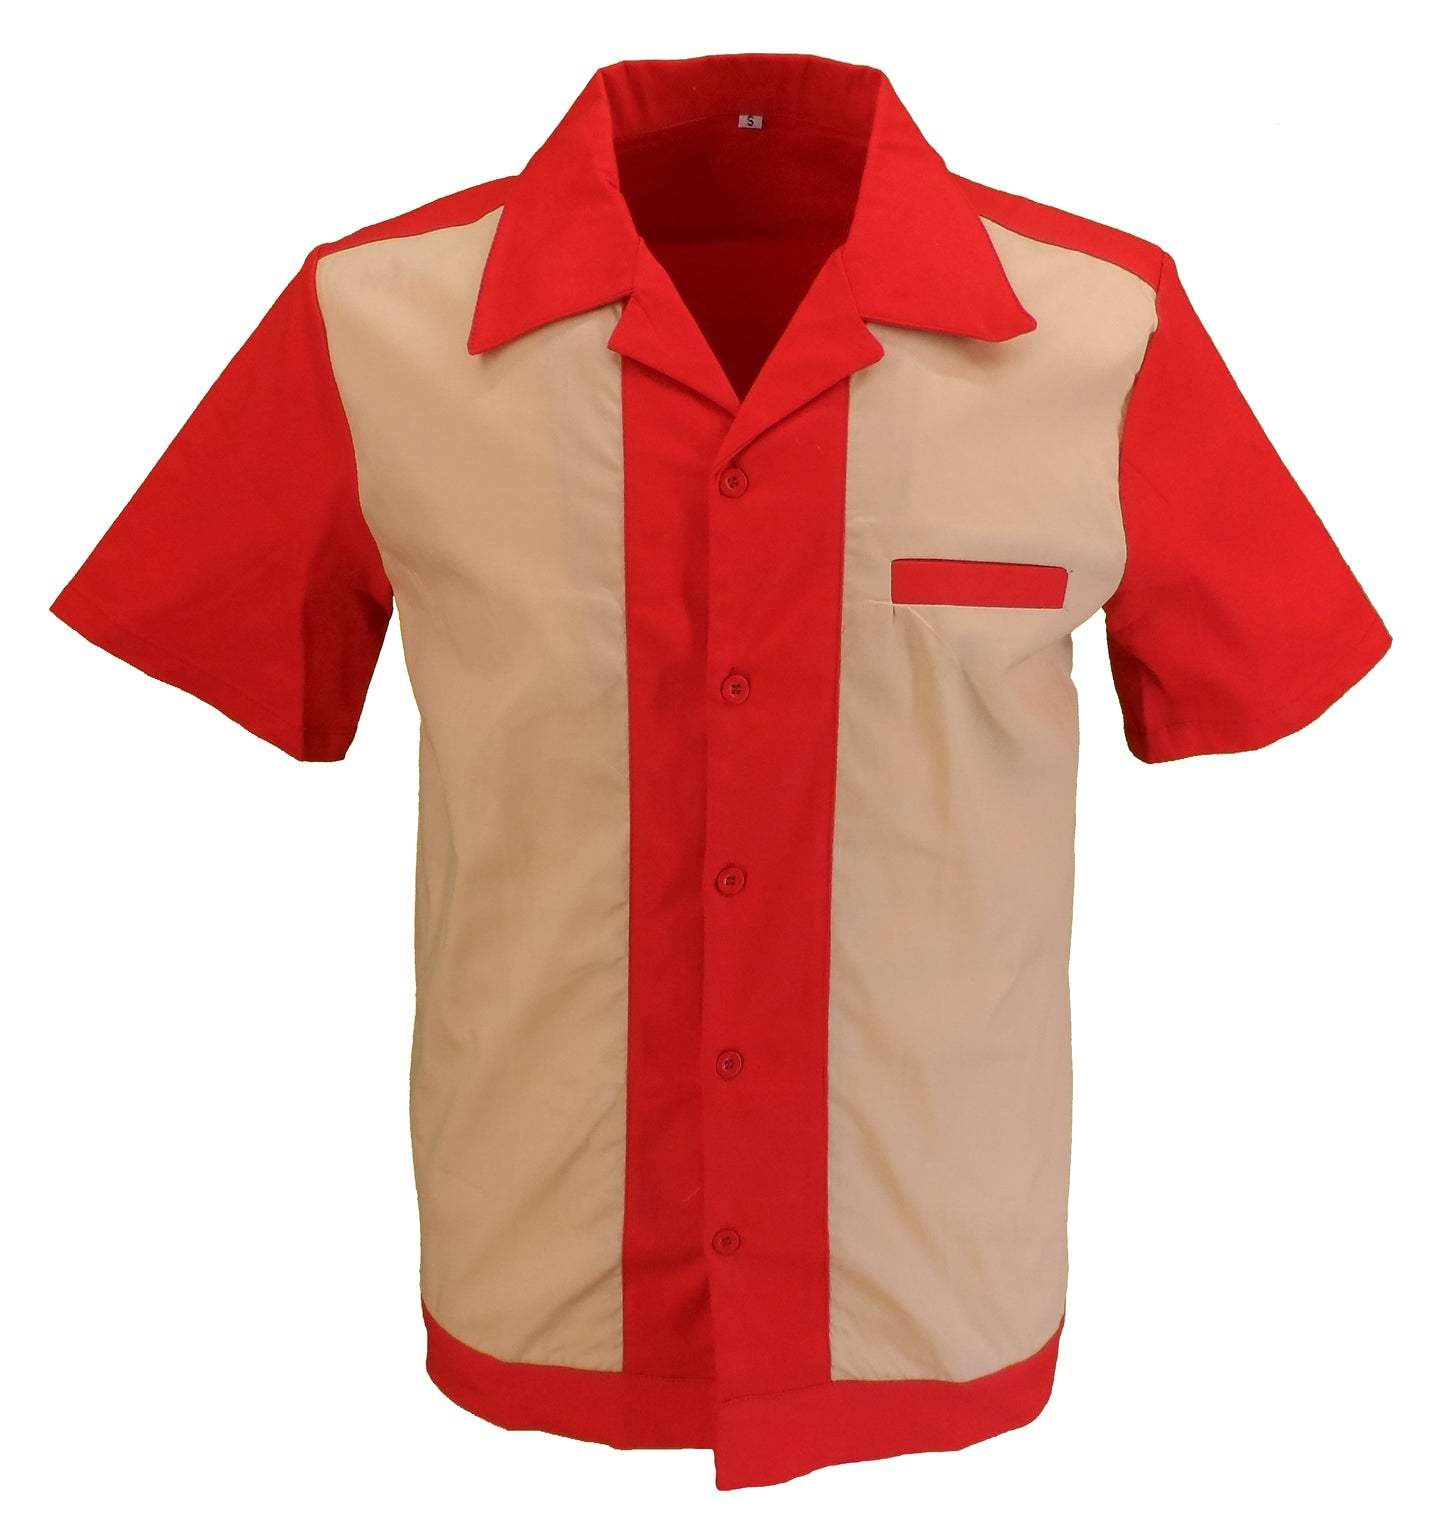 Mazeys Herren-Retro-Rockabilly Bowling Shirts Stil der 50er Jahre in Rot/Creme